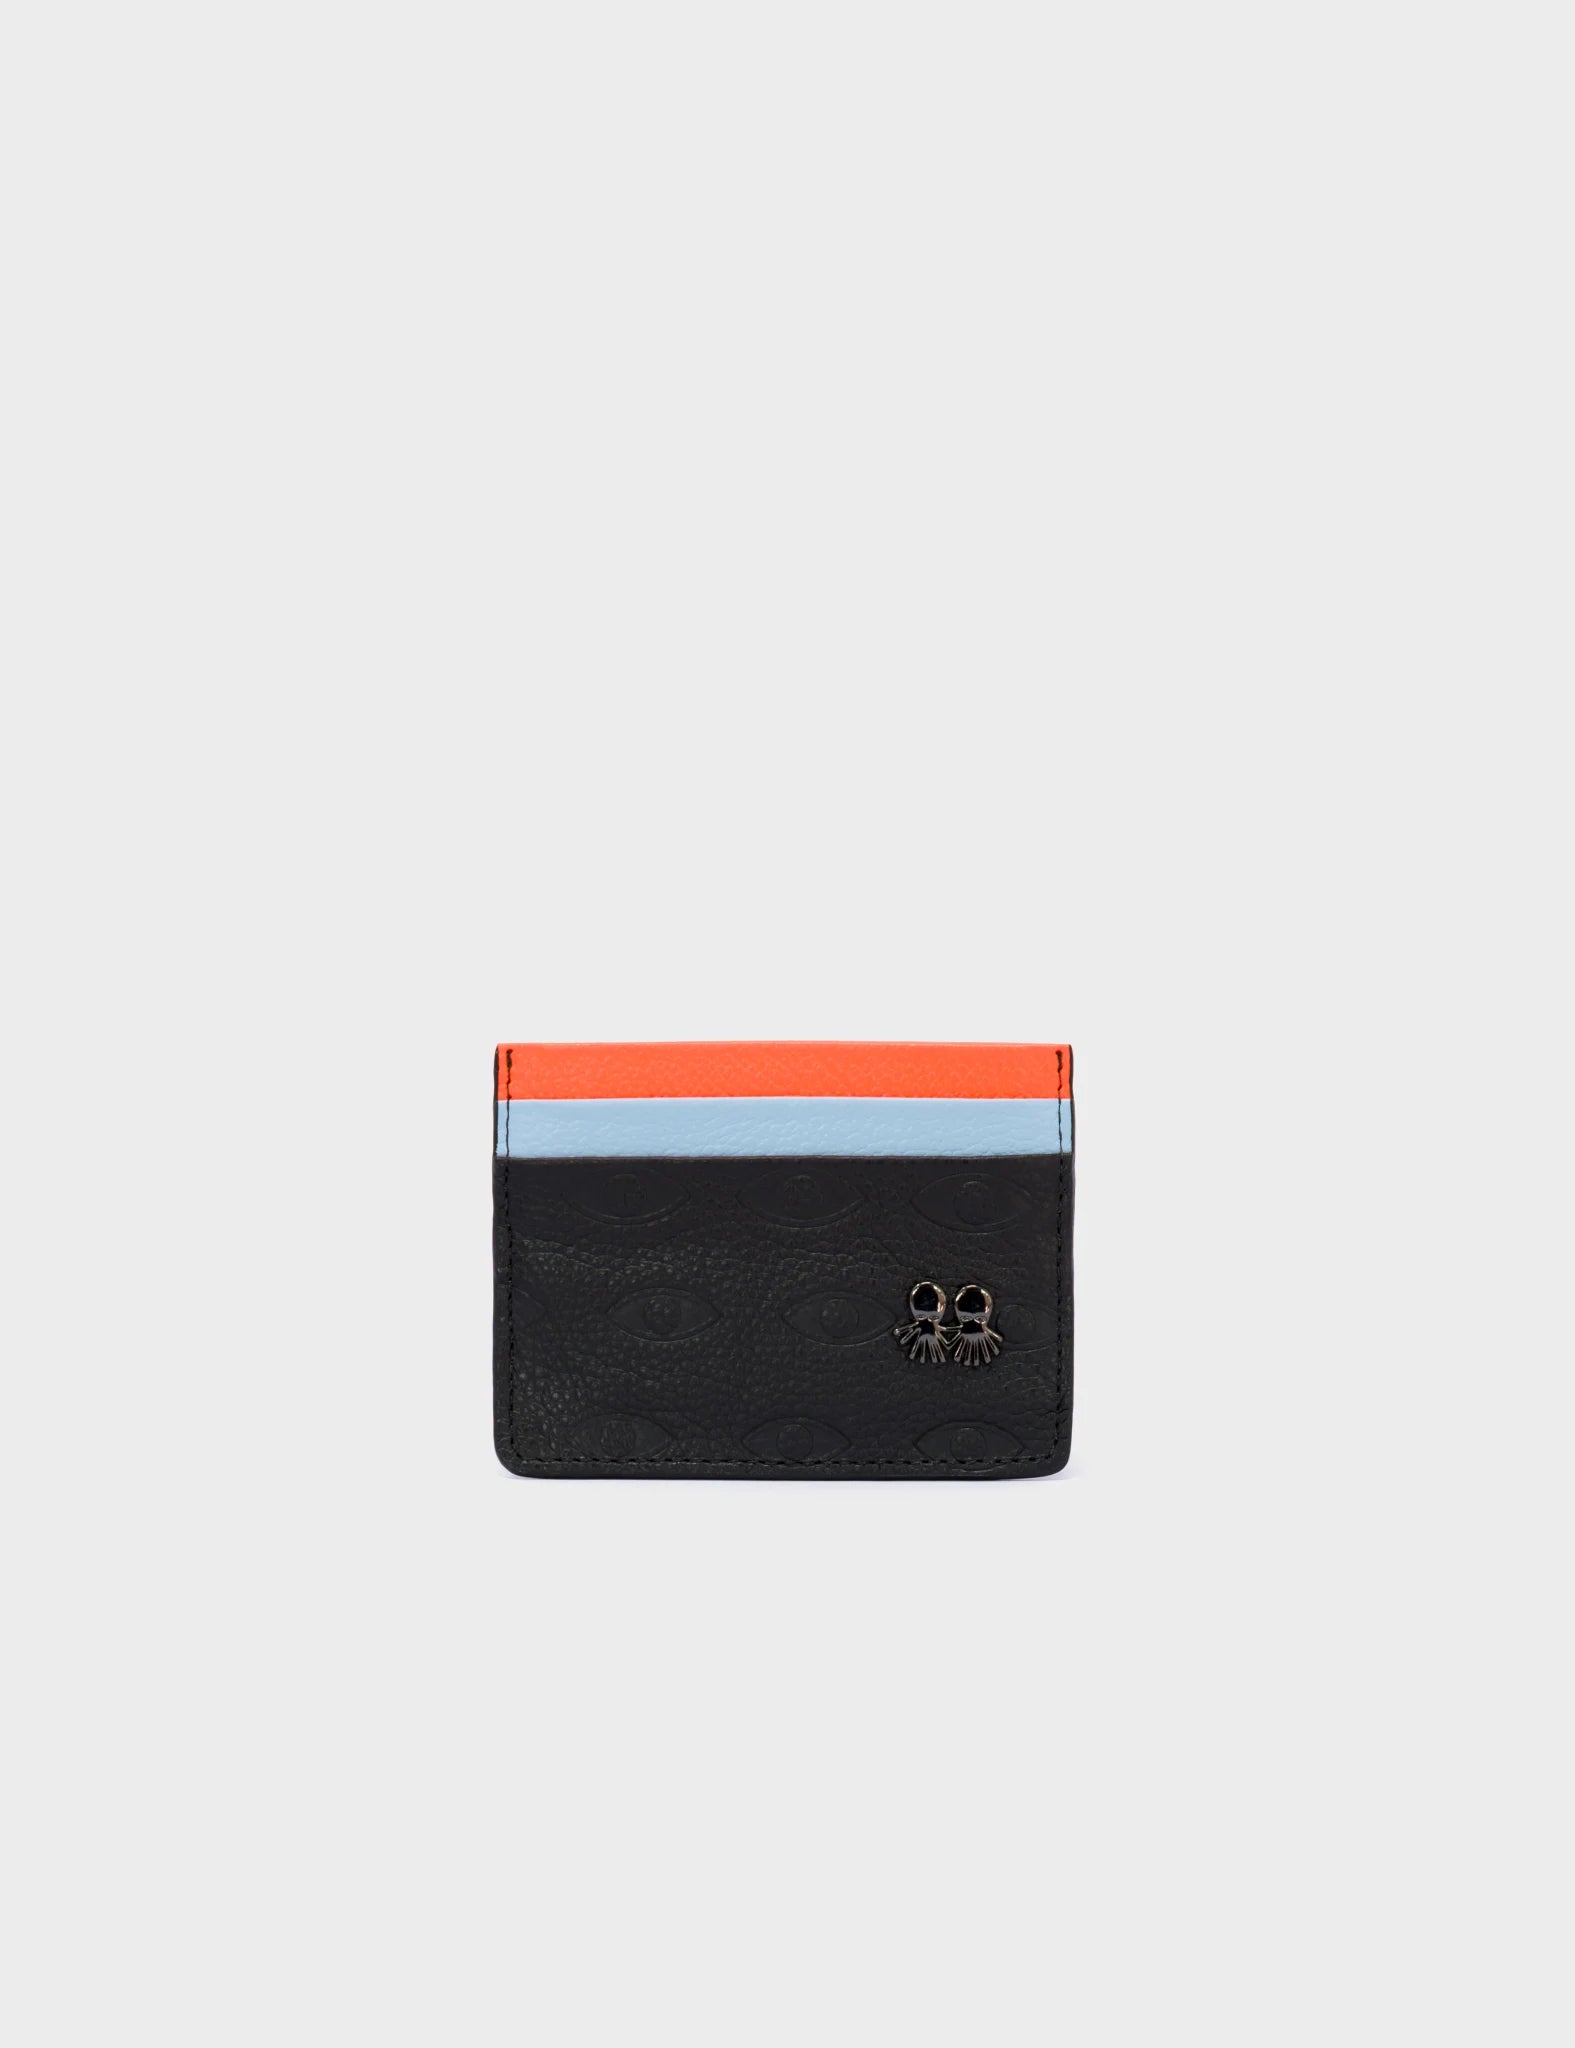 Filium Wallet Black And Neon Orange Leather Cardholder - Eyes Pattern Debossed